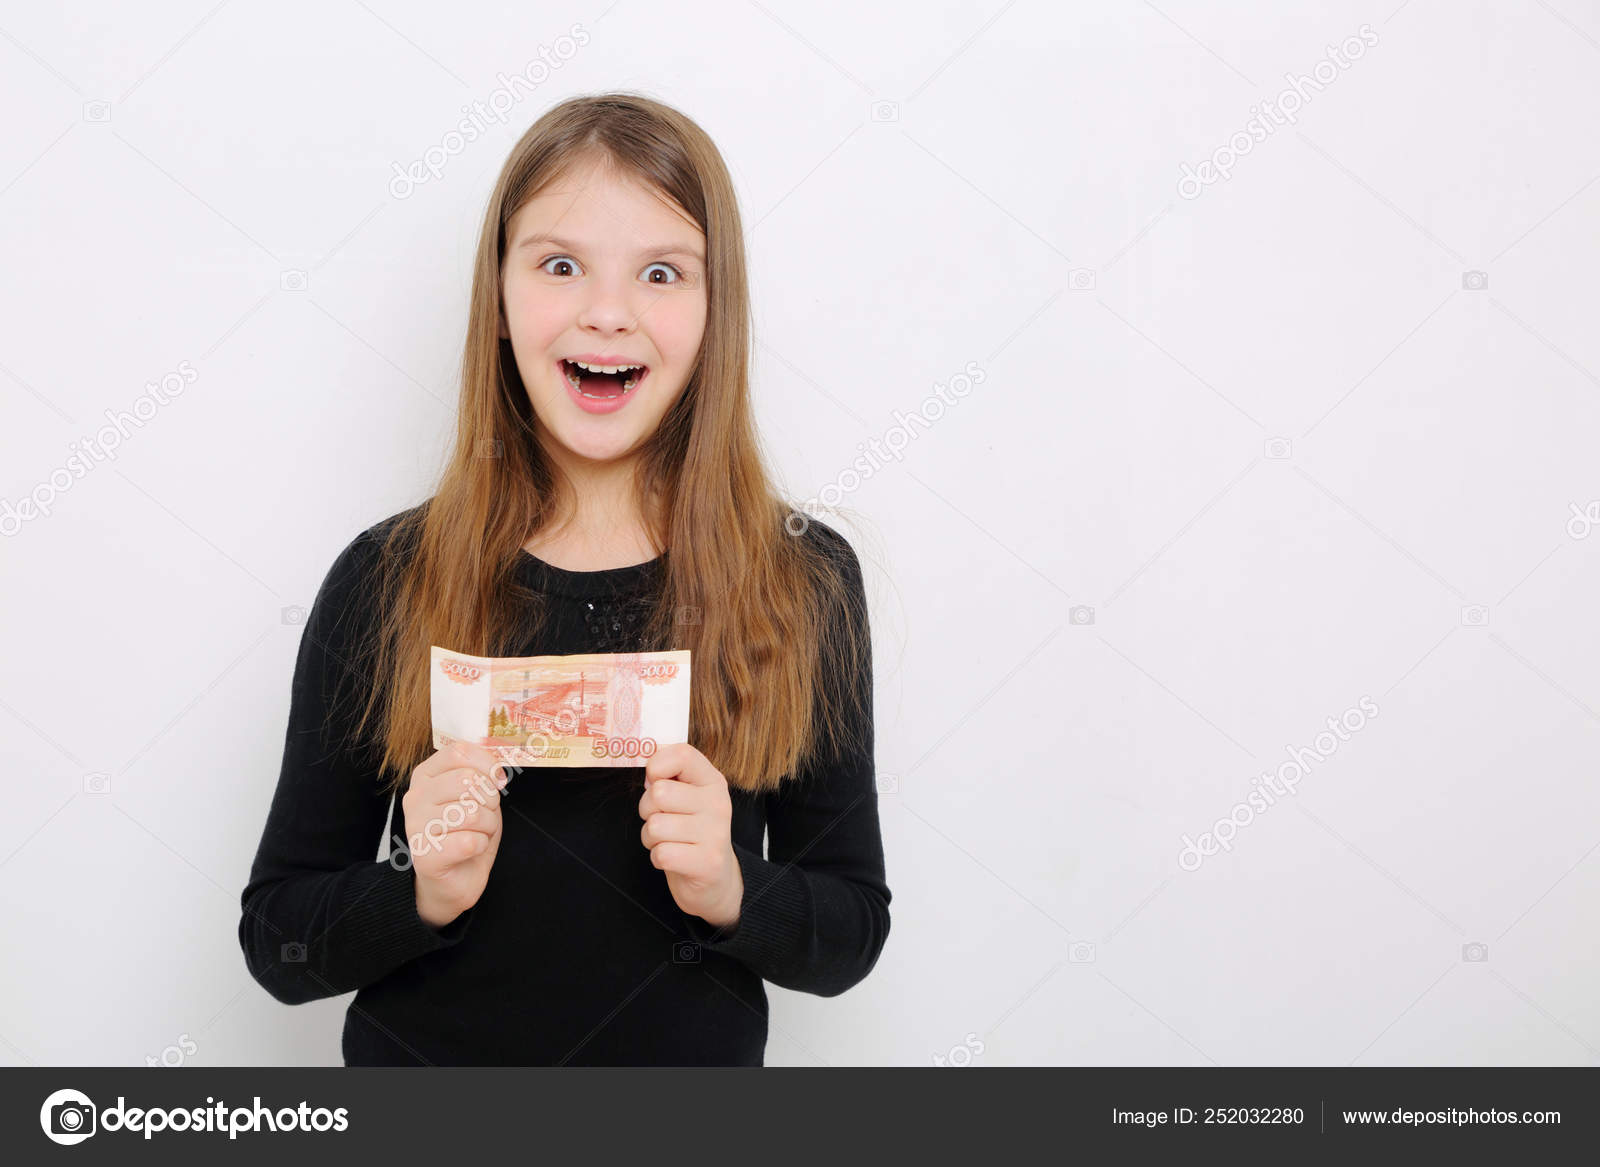 Russian Girl for little money